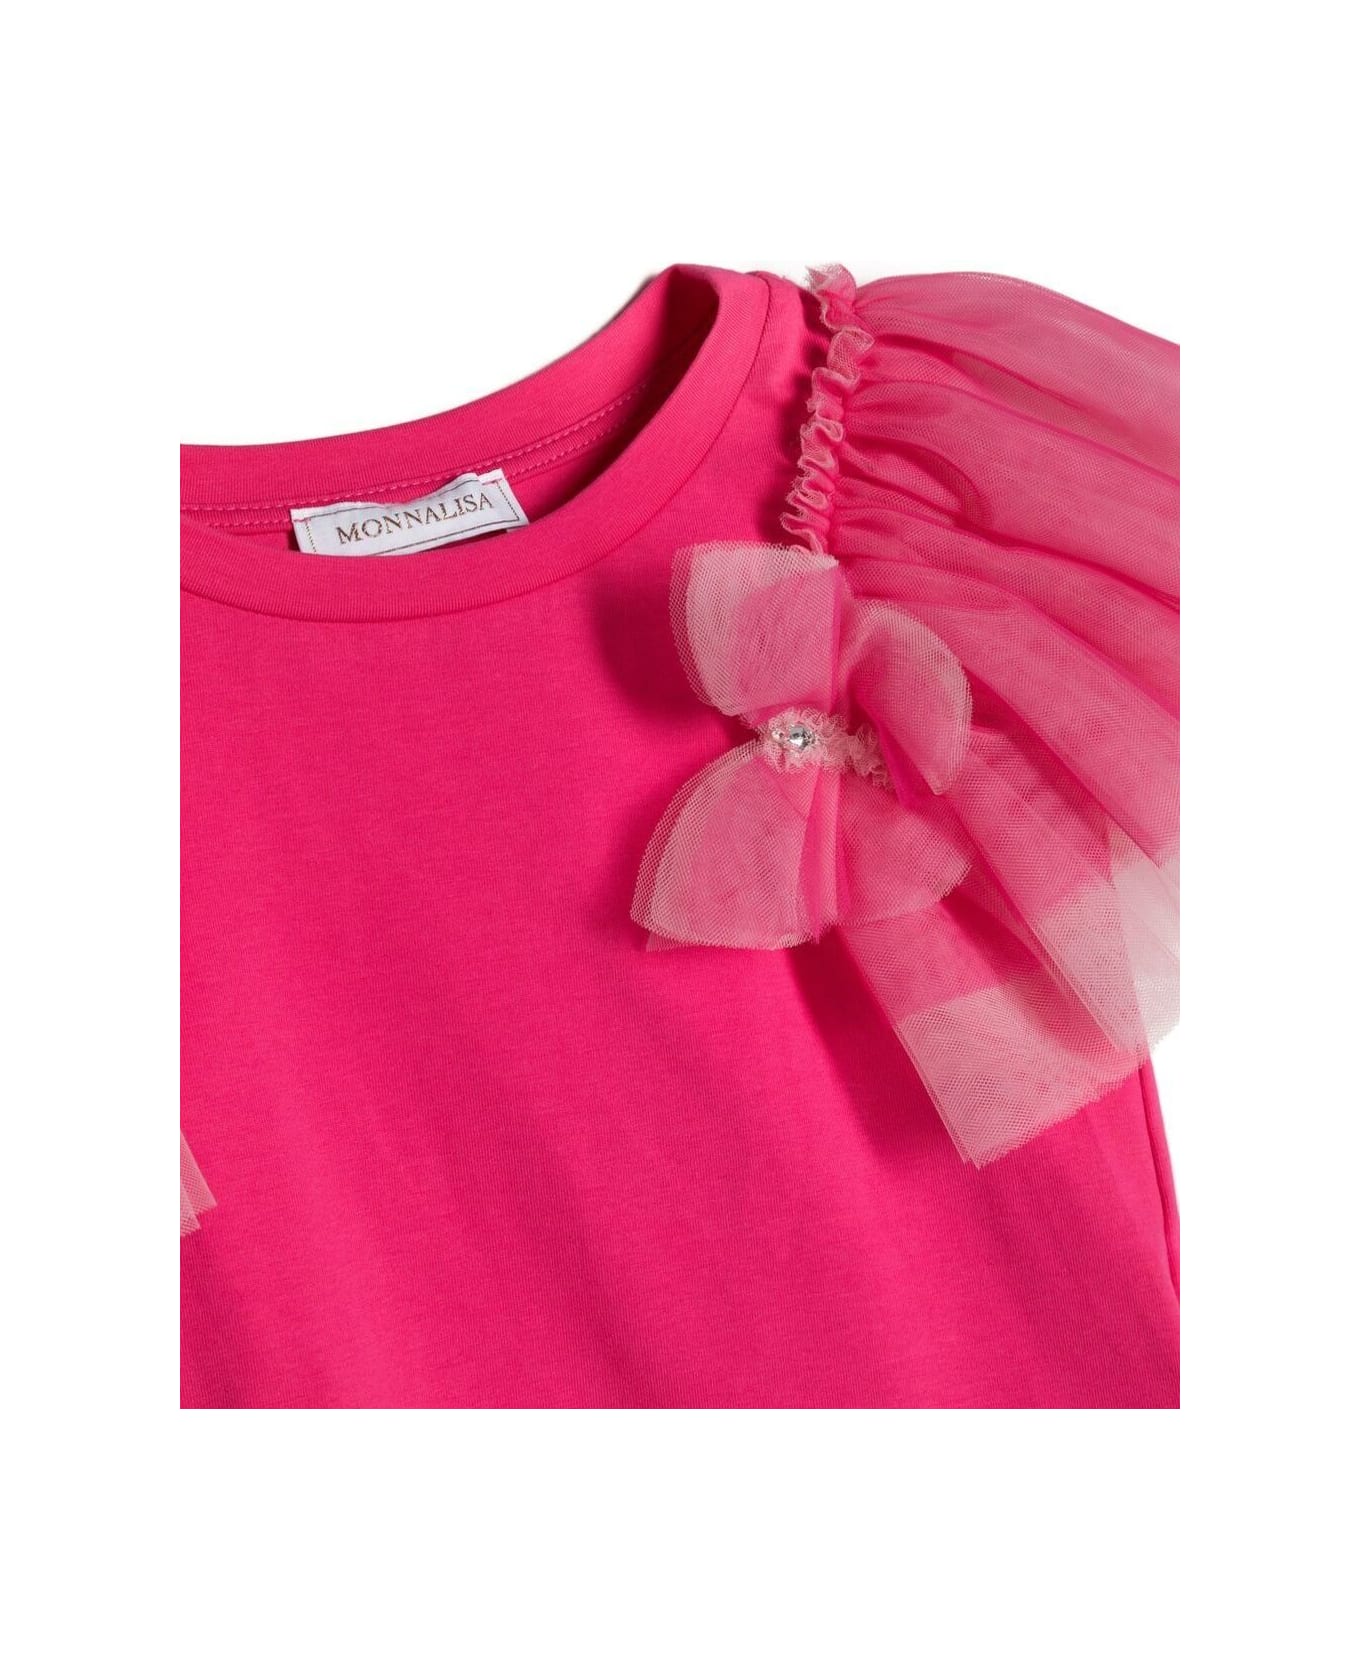 Monnalisa T-shirt Farfalla Popeline Jersey - PINK